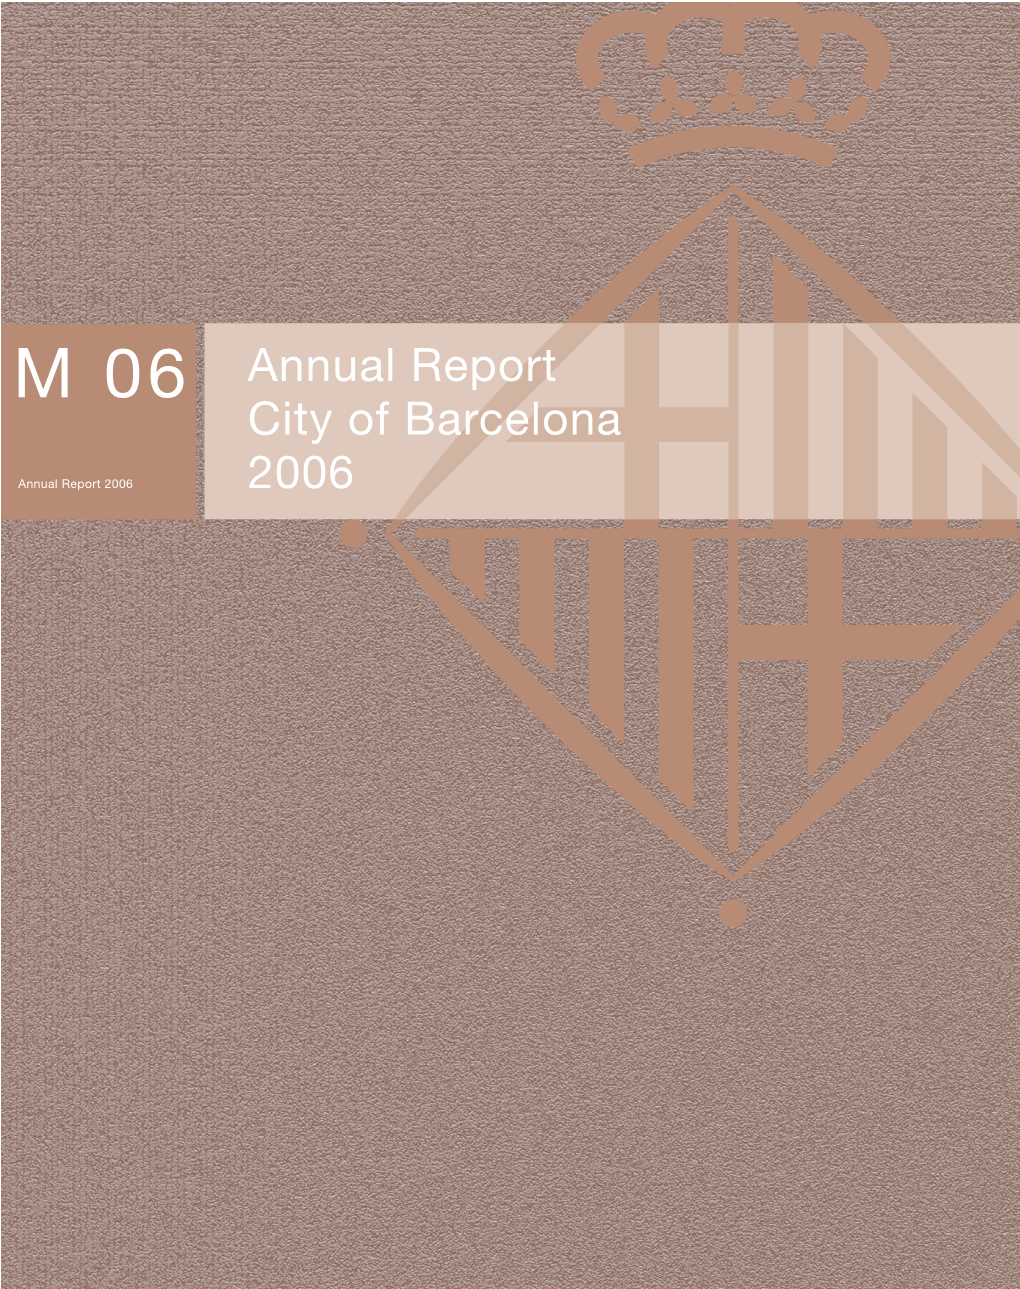 Barcelona City Council Annual Report 2006 (PDF)